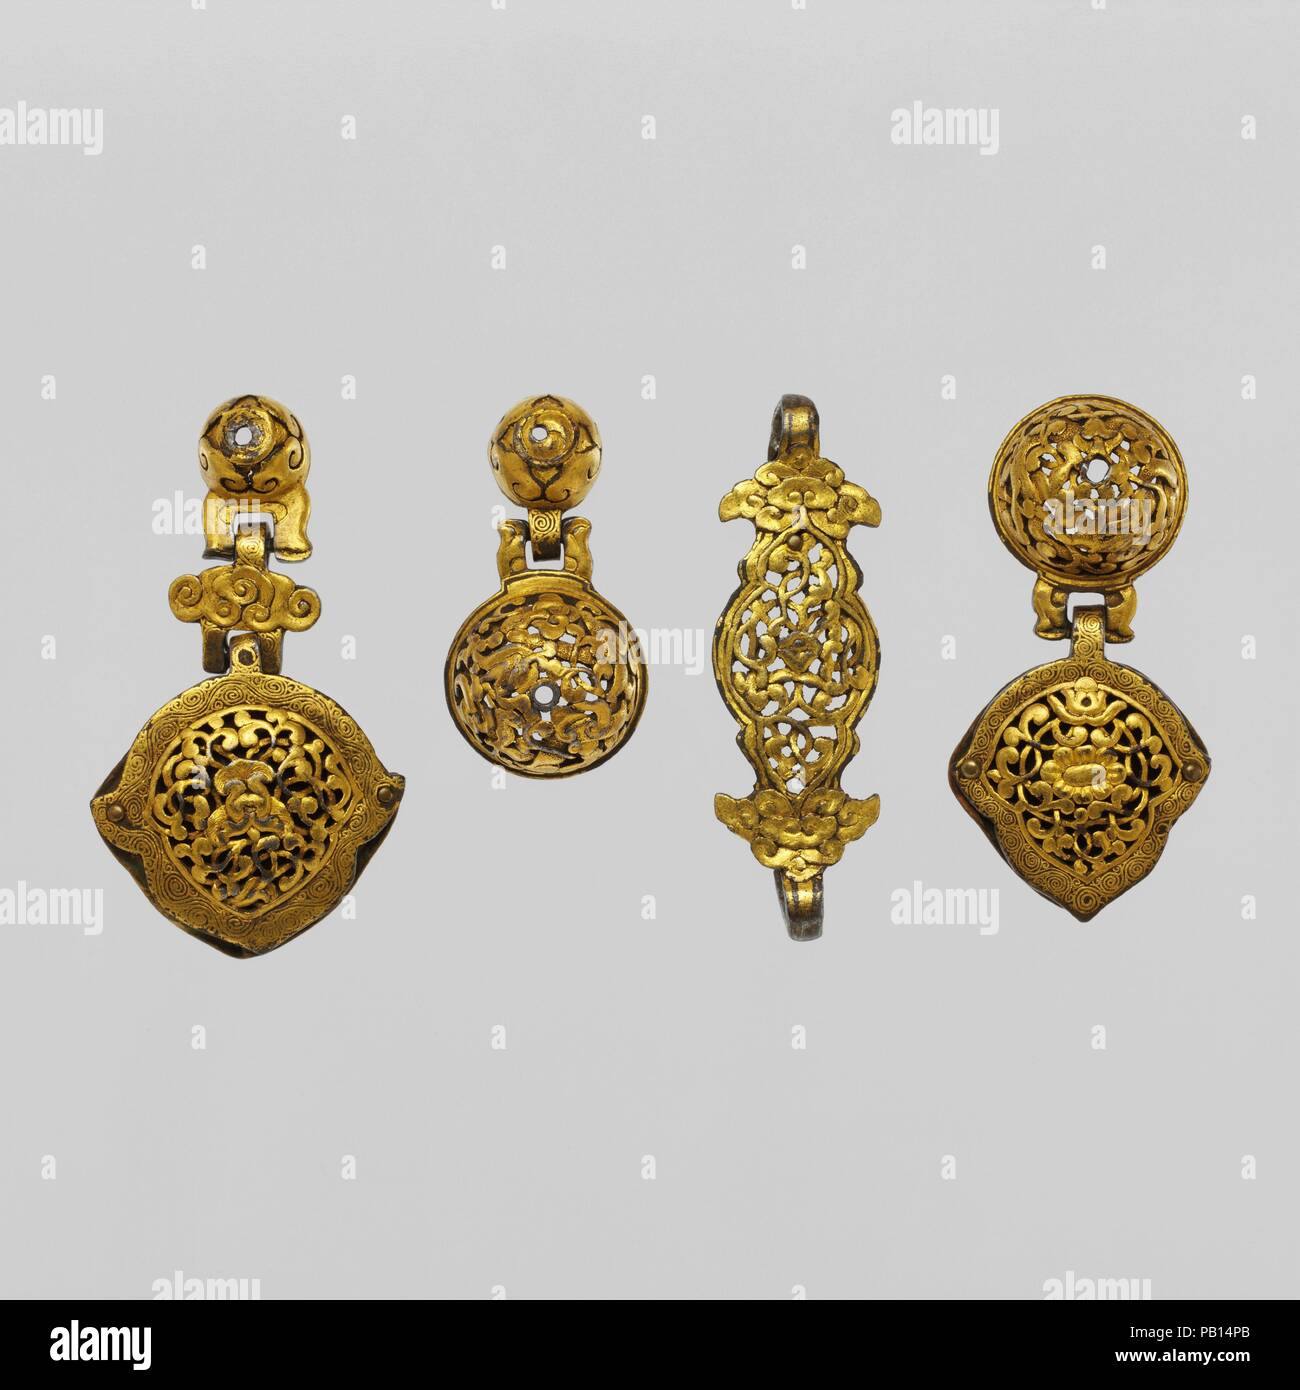 Diciannove accessori ornamentali da un cavallo di cablaggio e una sella ornamentali in acciaio. Cultura: piatto sella, cinese o tibetano; accessori di cablaggio, tibetani. Dimensioni: piatto sella (2002.17.20); H. 3 1/2 in. (8,9 cm); W. 4 1/4 in. (10,8 cm); Wt. 5.5 oz. (155,9 g); raccordi cablaggio (2002.17.4, .7, .10, .16); L. 3 1/8 in. (7,9 cm) a 2 1/8 in. (5.4 cm). Data: piatto sella, XVII - XVIII secolo; i raccordi del sistema di cavi, XV, XVI e XVII secolo. Museo: Metropolitan Museum of Art di New York, Stati Uniti d'America. Foto Stock